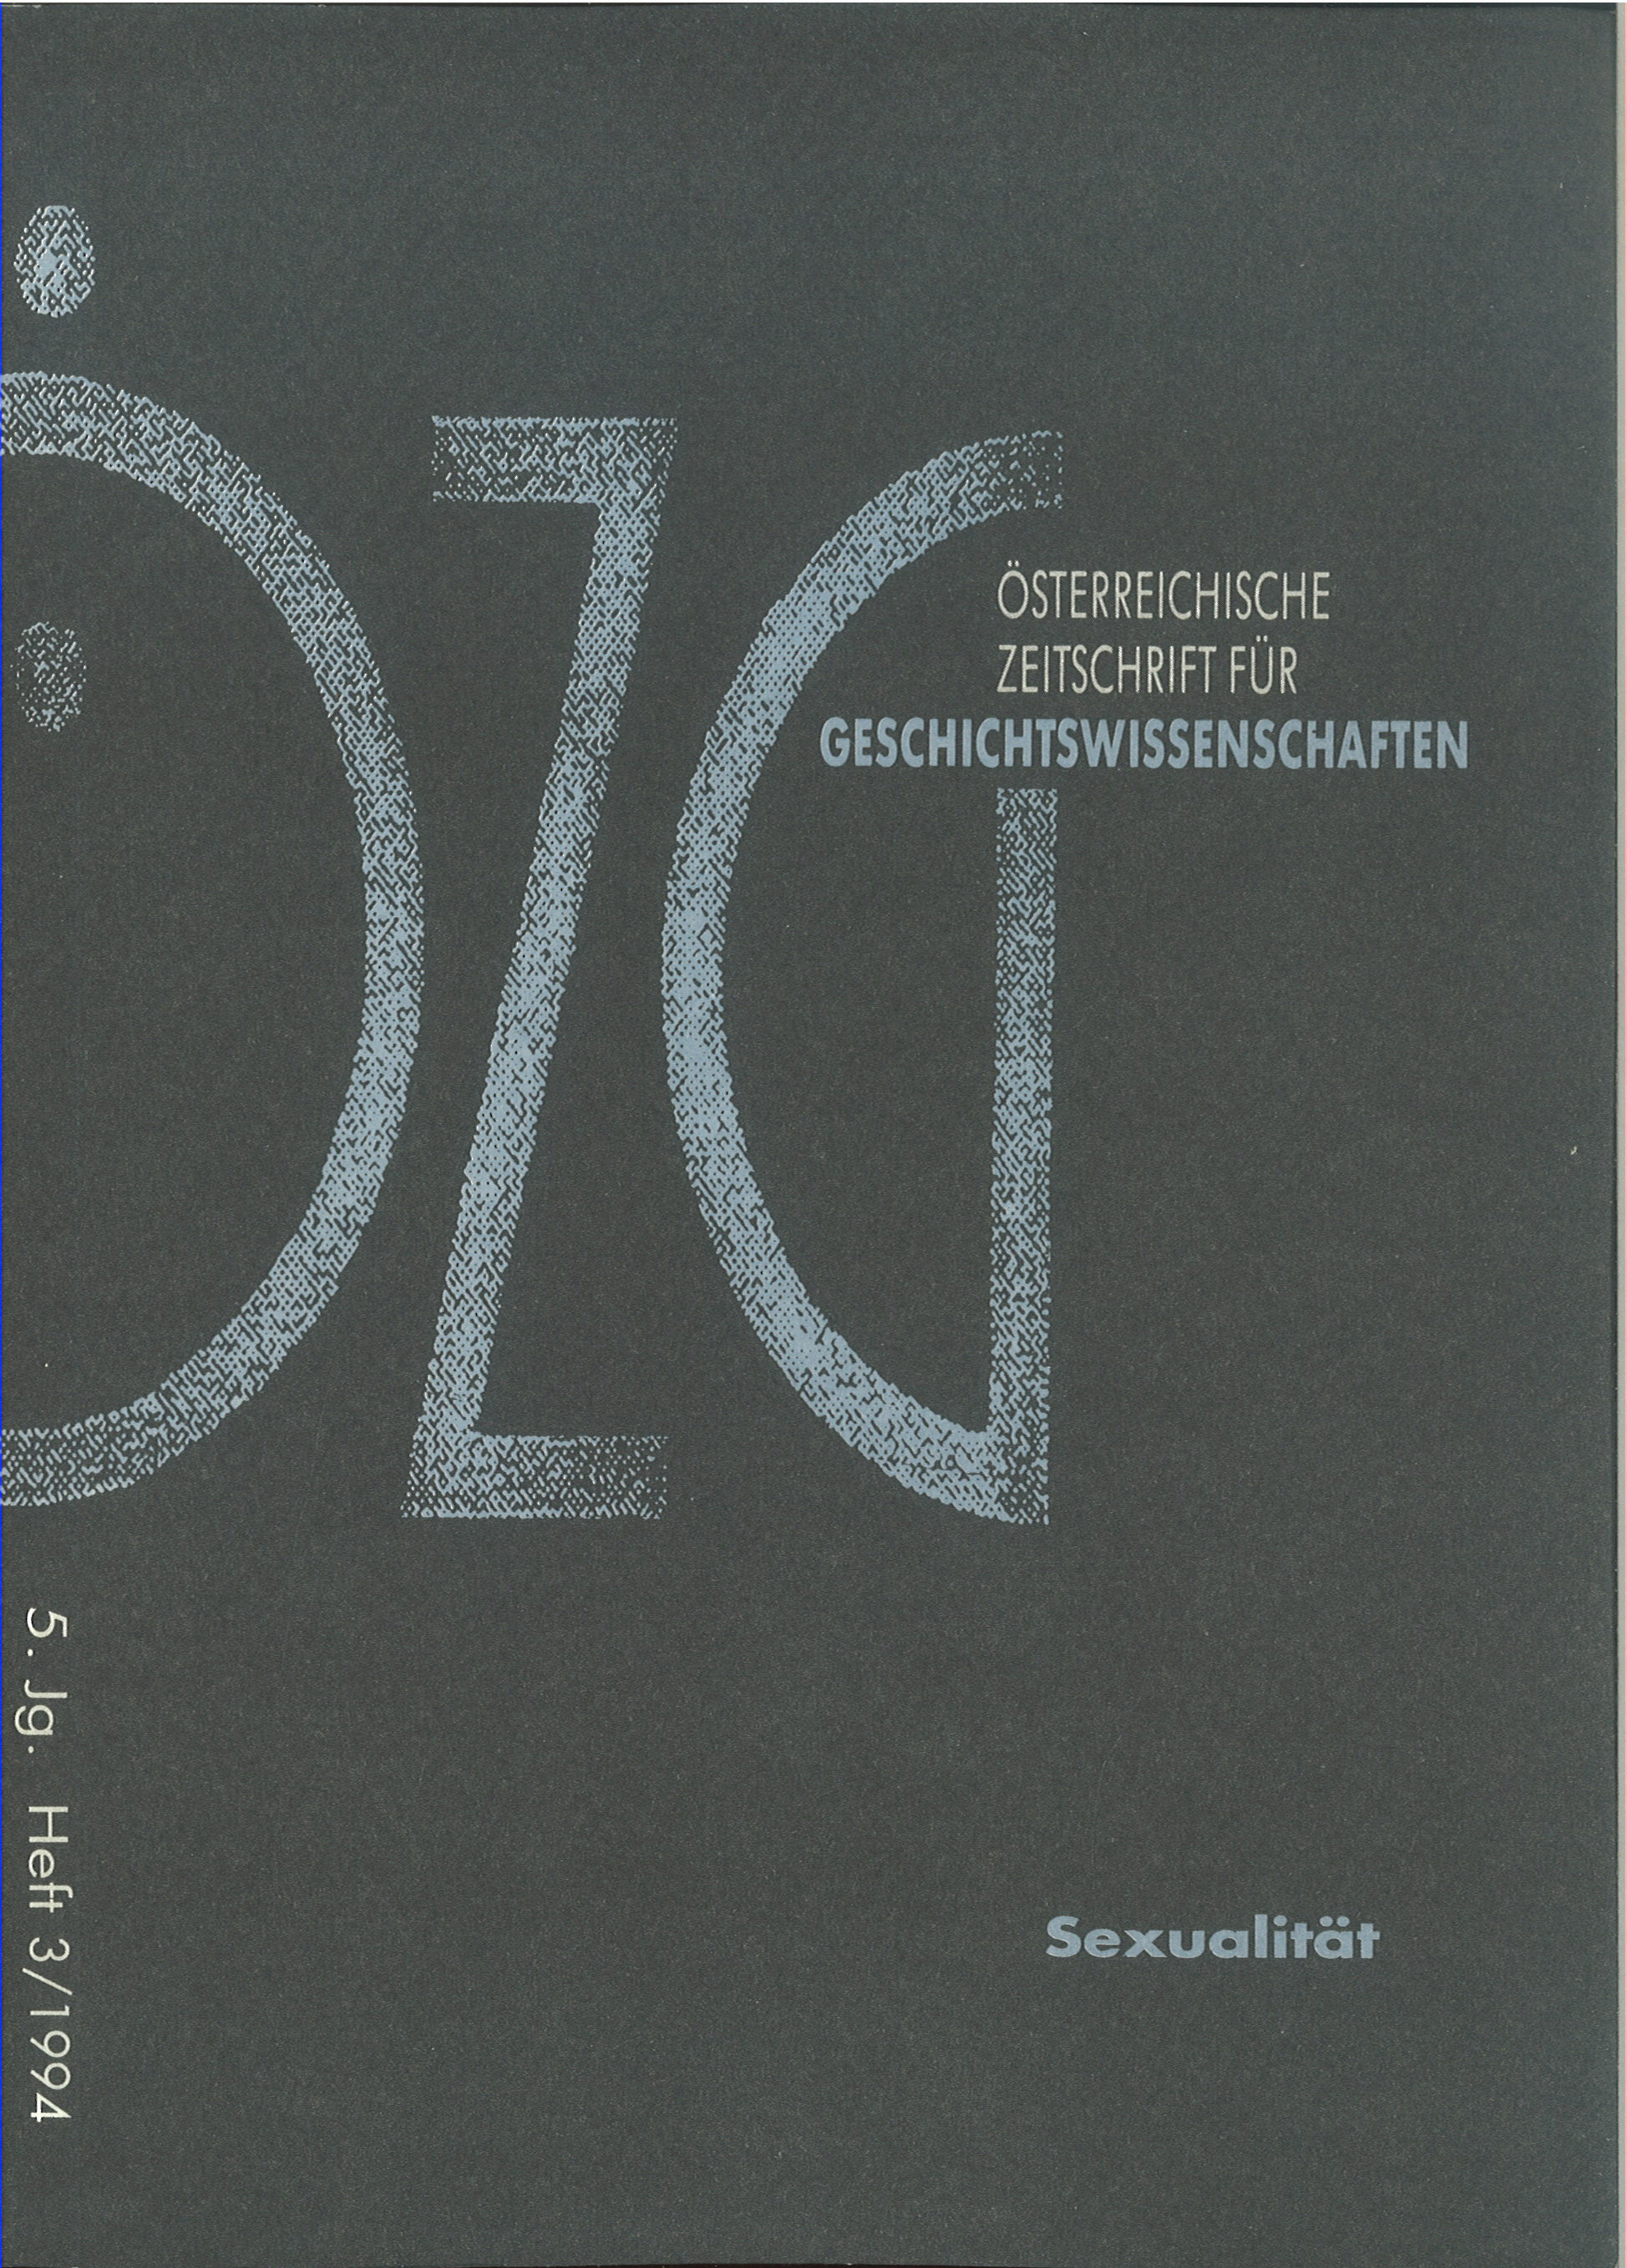 					Ansehen Bd. 5 Nr. 3 (1994): Sexualität
				